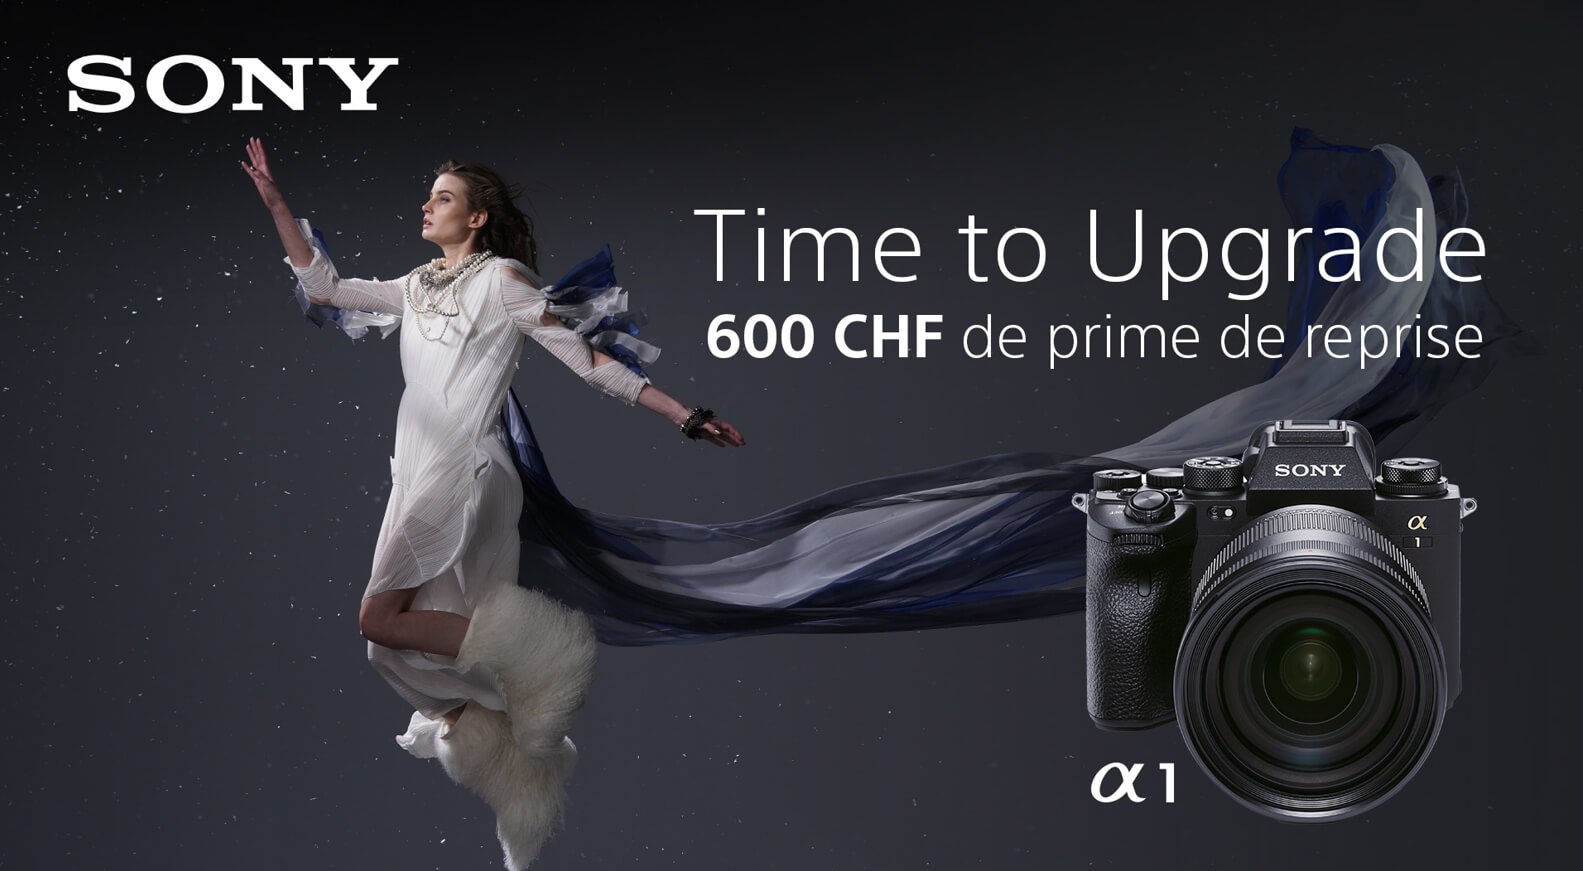 Time to upgrade - Assurez-vous jusqu'à 600 CHF de prime d'échange Sony ! 